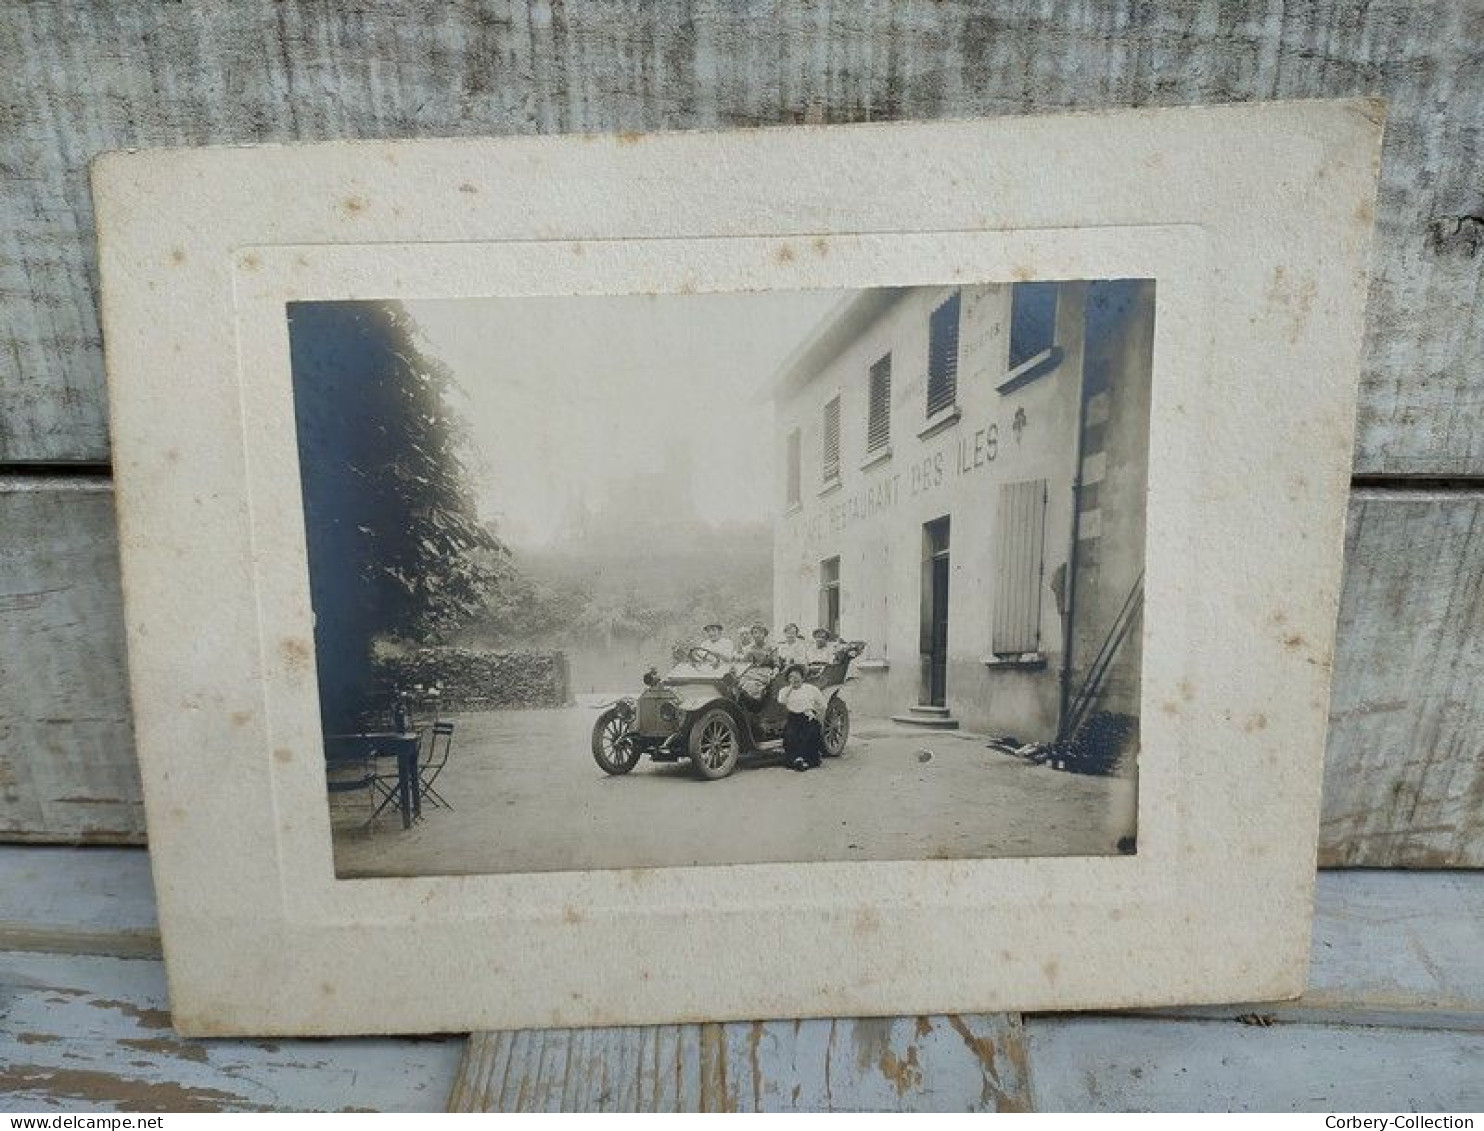 Photographie Ancienne Animée Café Restaurant Des Iles Albigny 1913 Automobile - Lieux